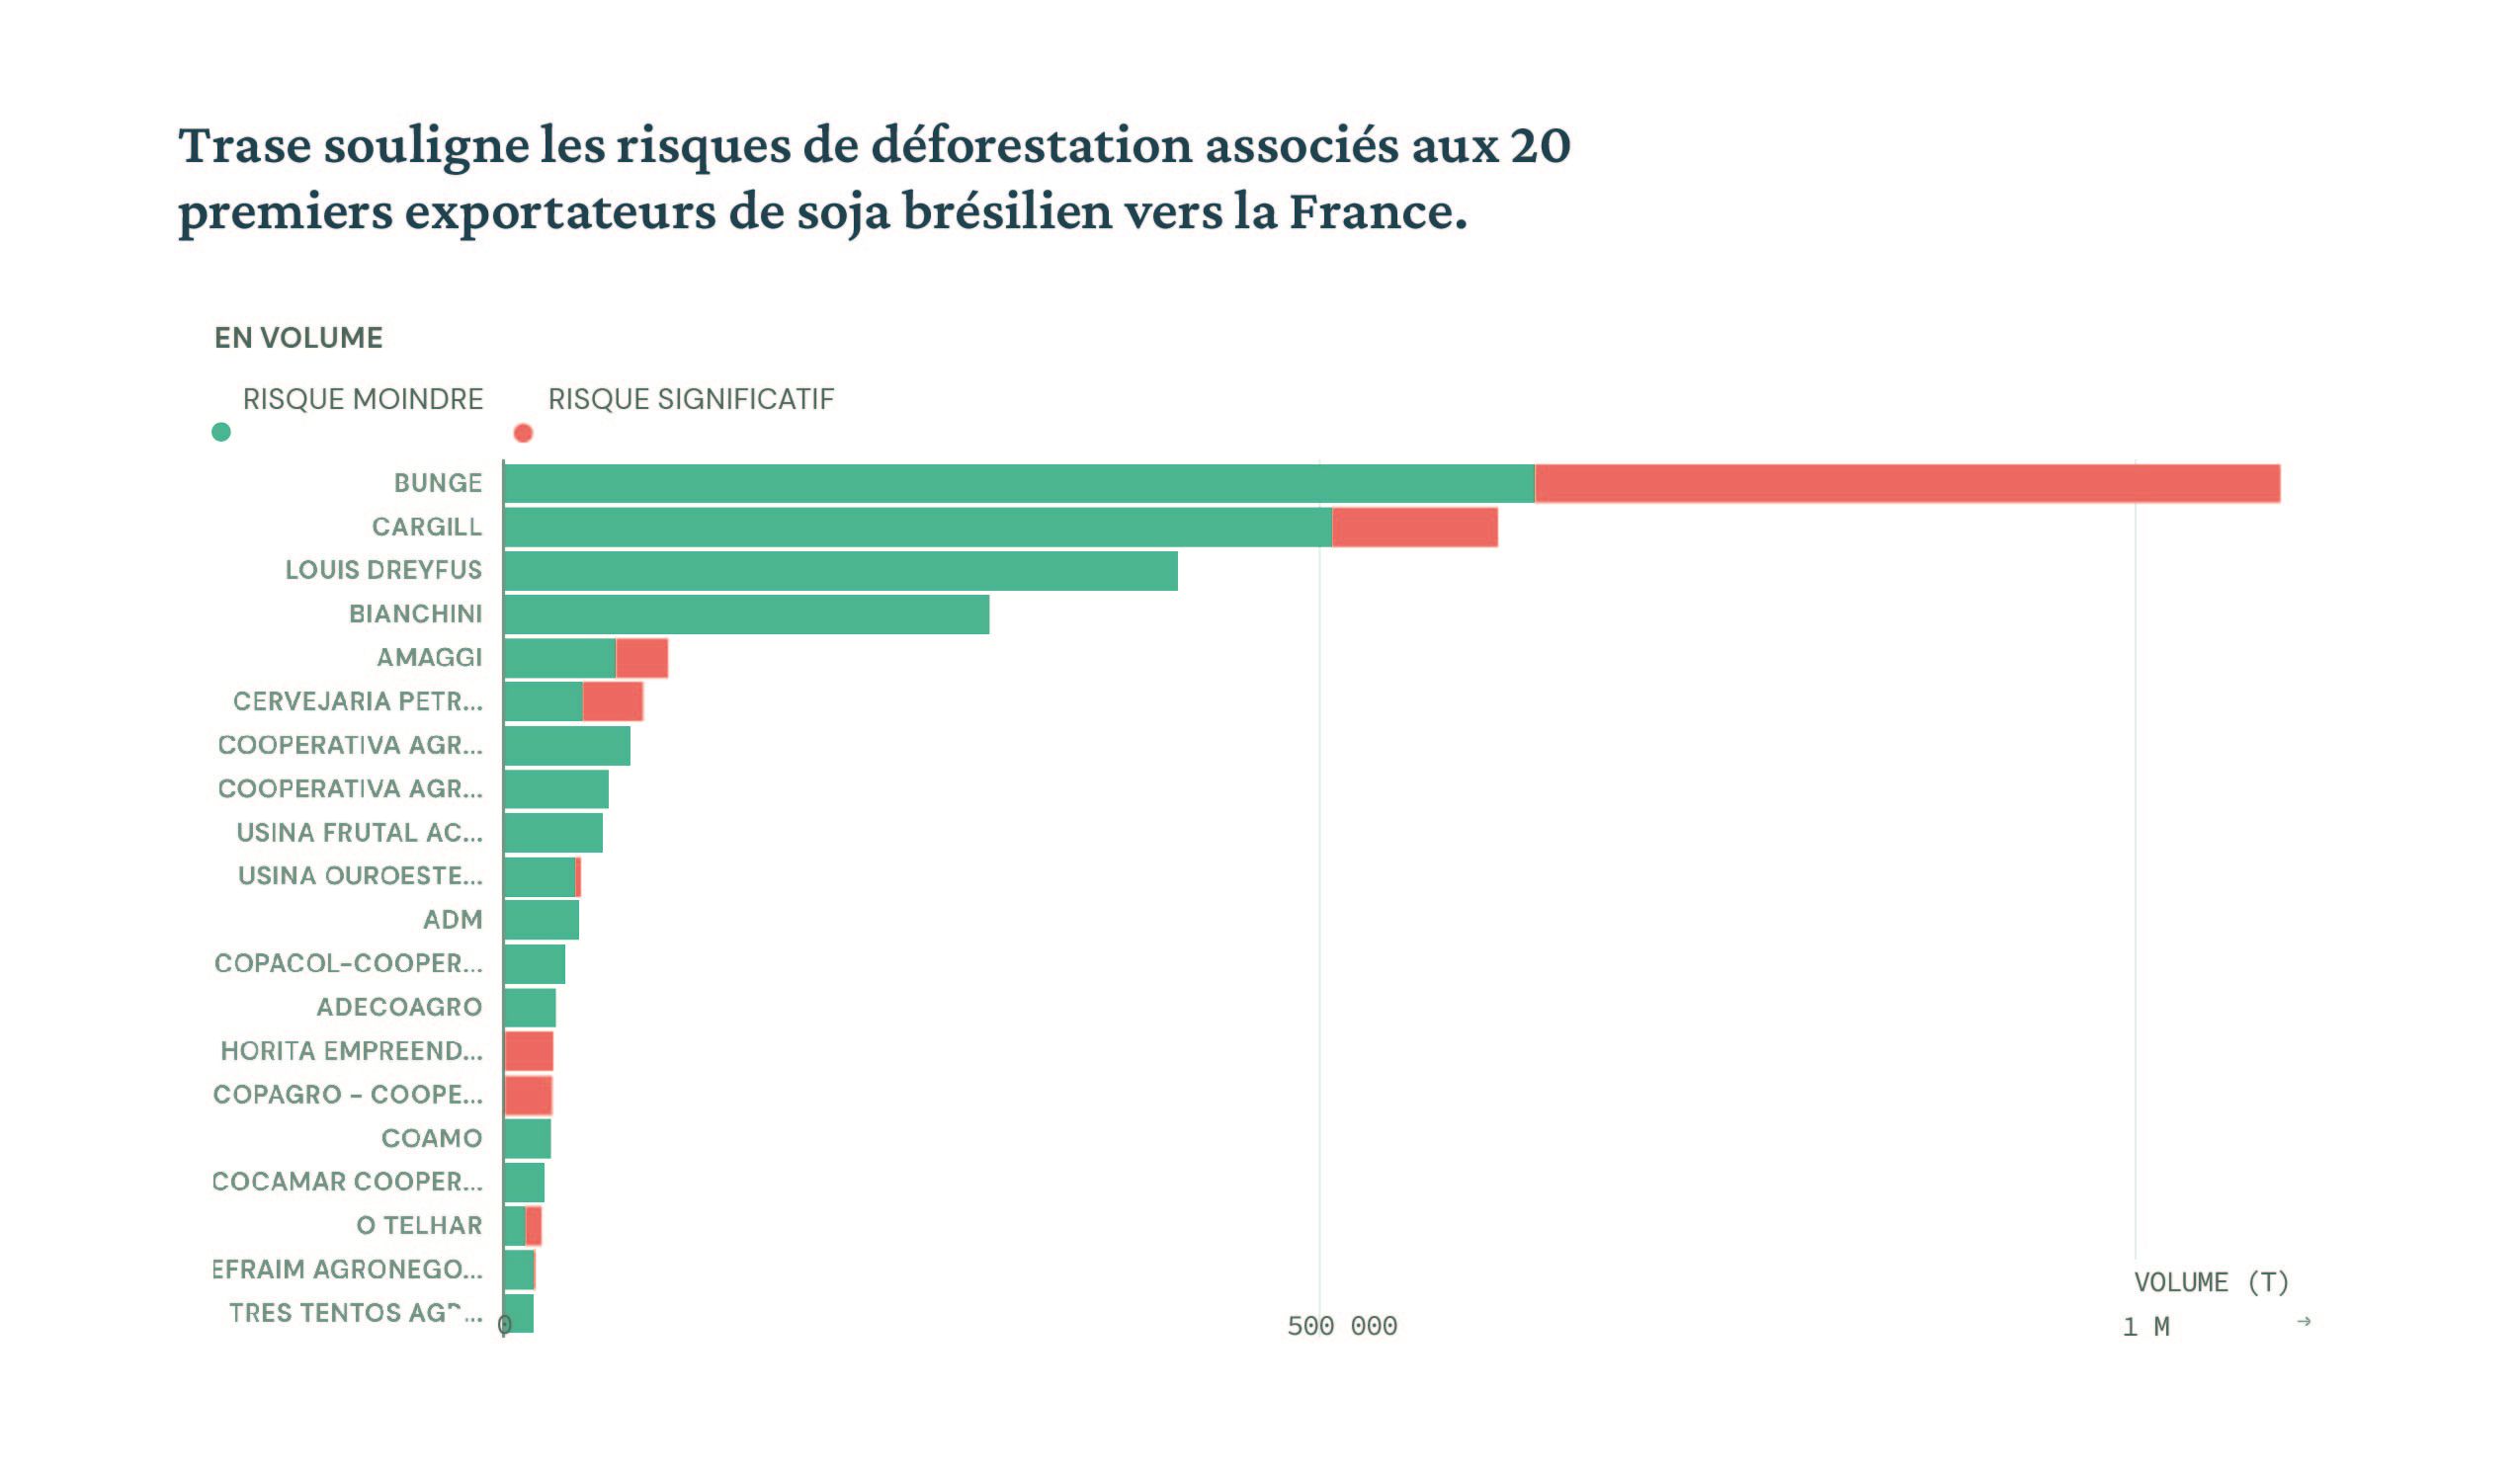 Trase souligne les risques de déforestation associés aux 20 premiers exportateurs de soja brésilien vers la France